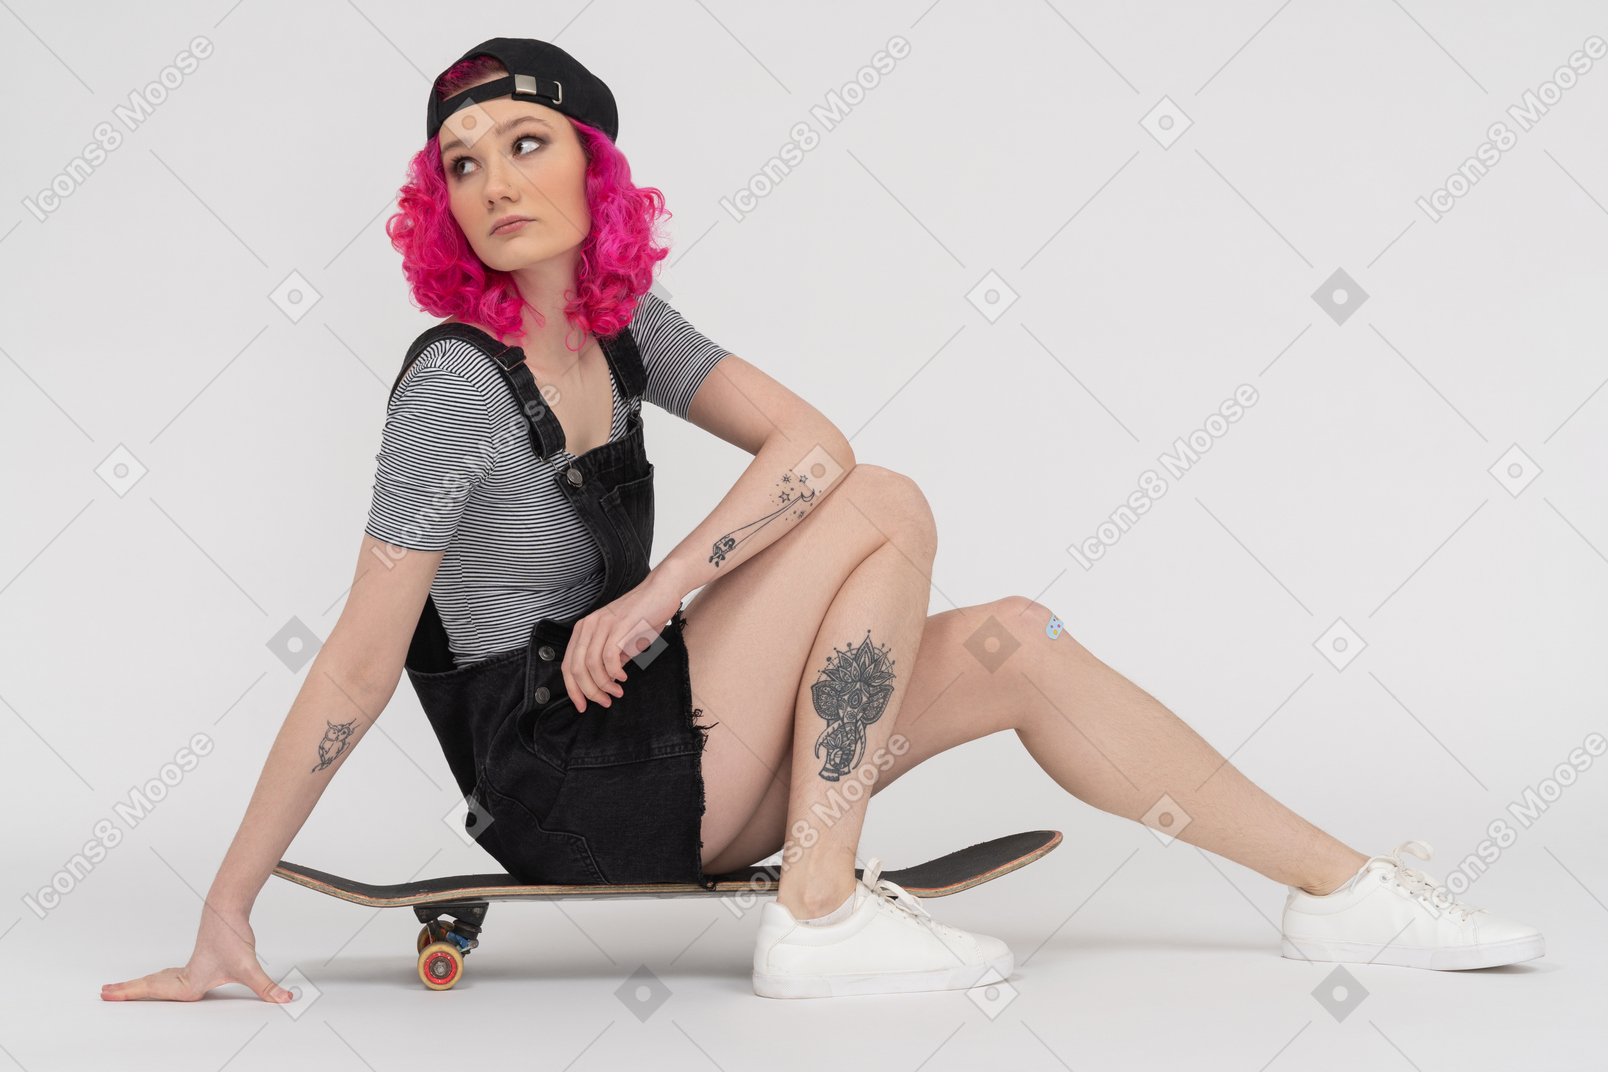 Garota tatuada com cabelo rosa sentada em um skate